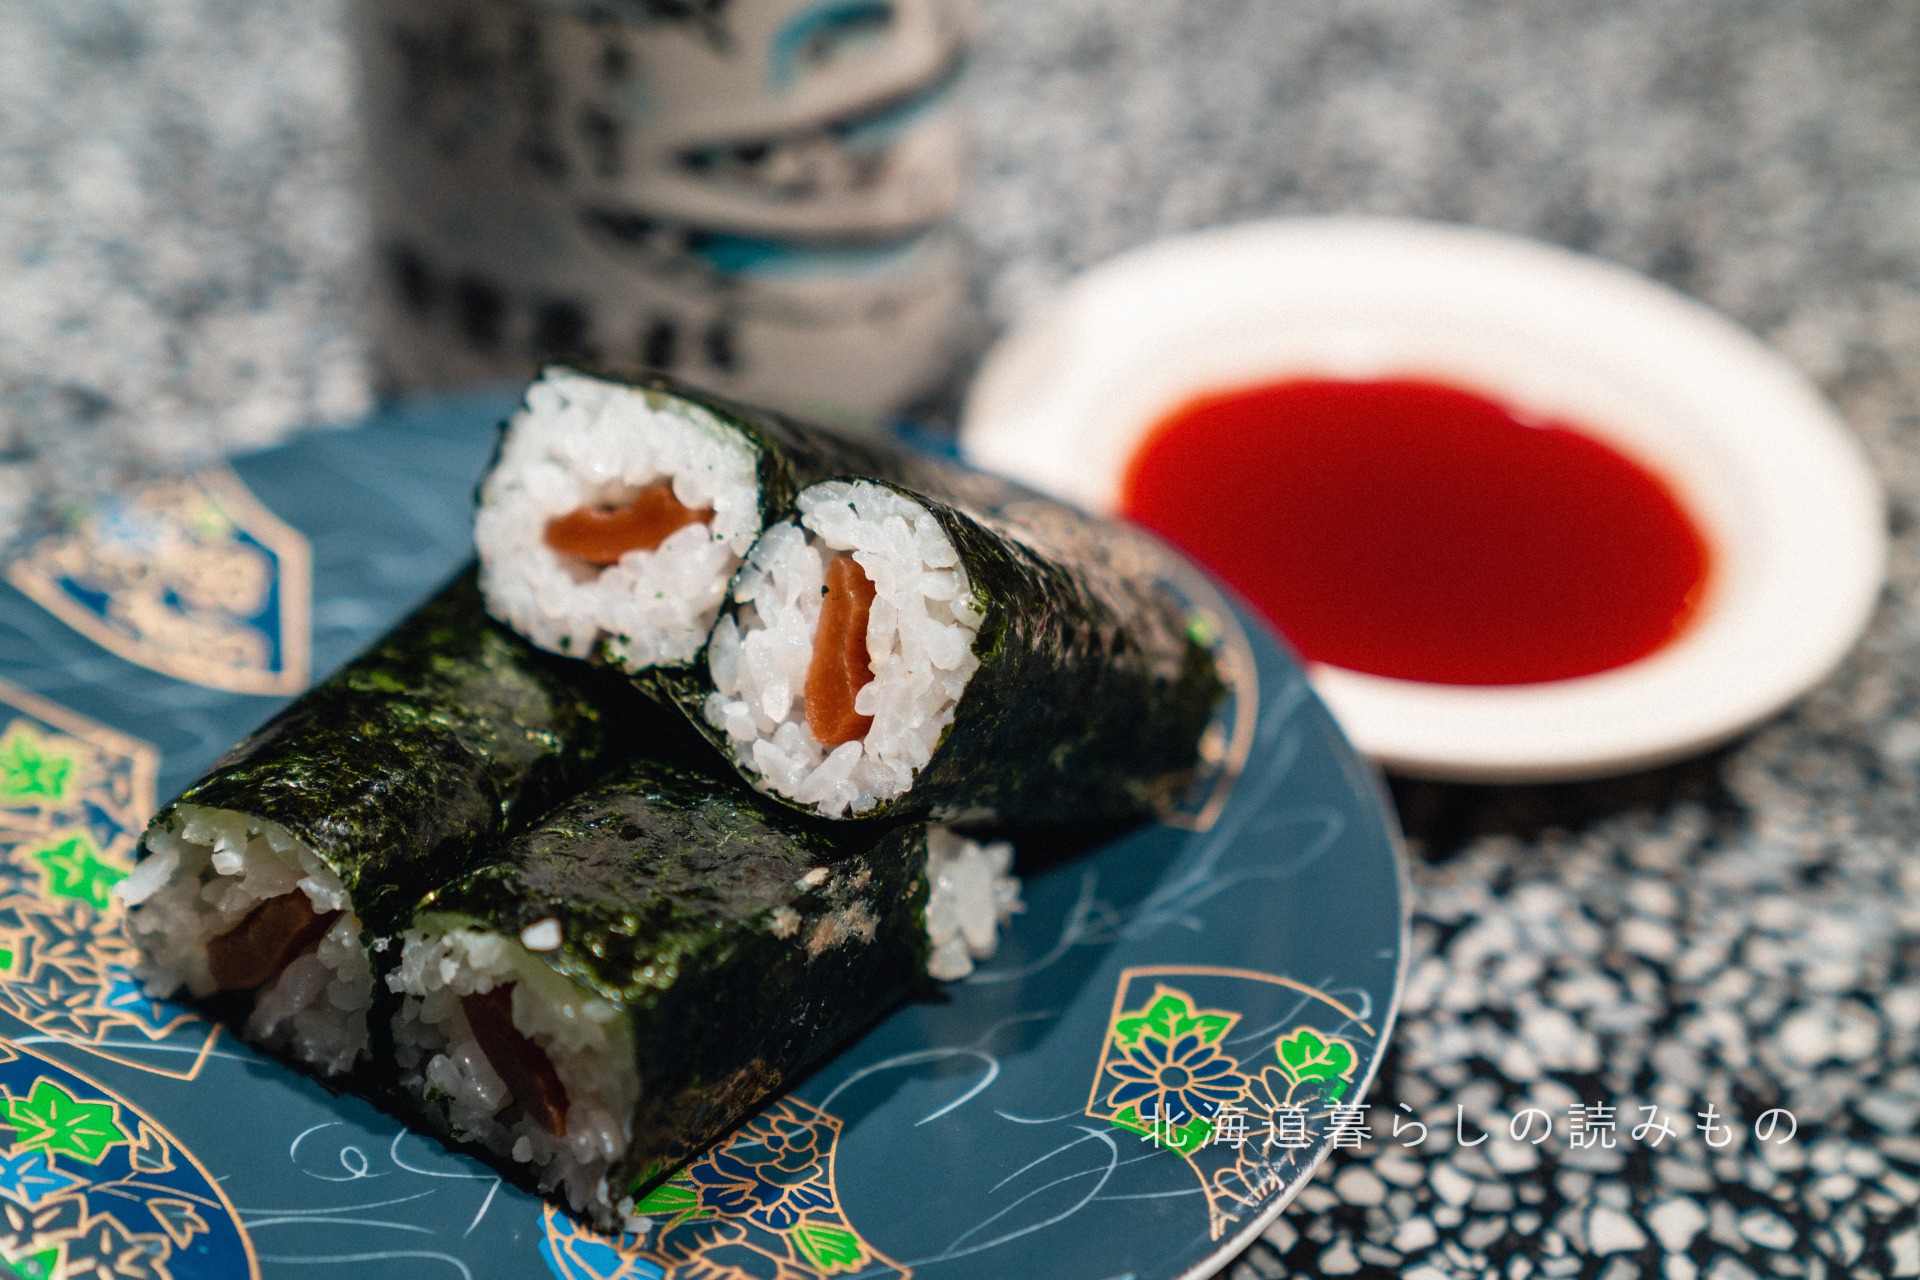 迴轉壽司根室花丸的菜單上的「葫芦干巻壽司」